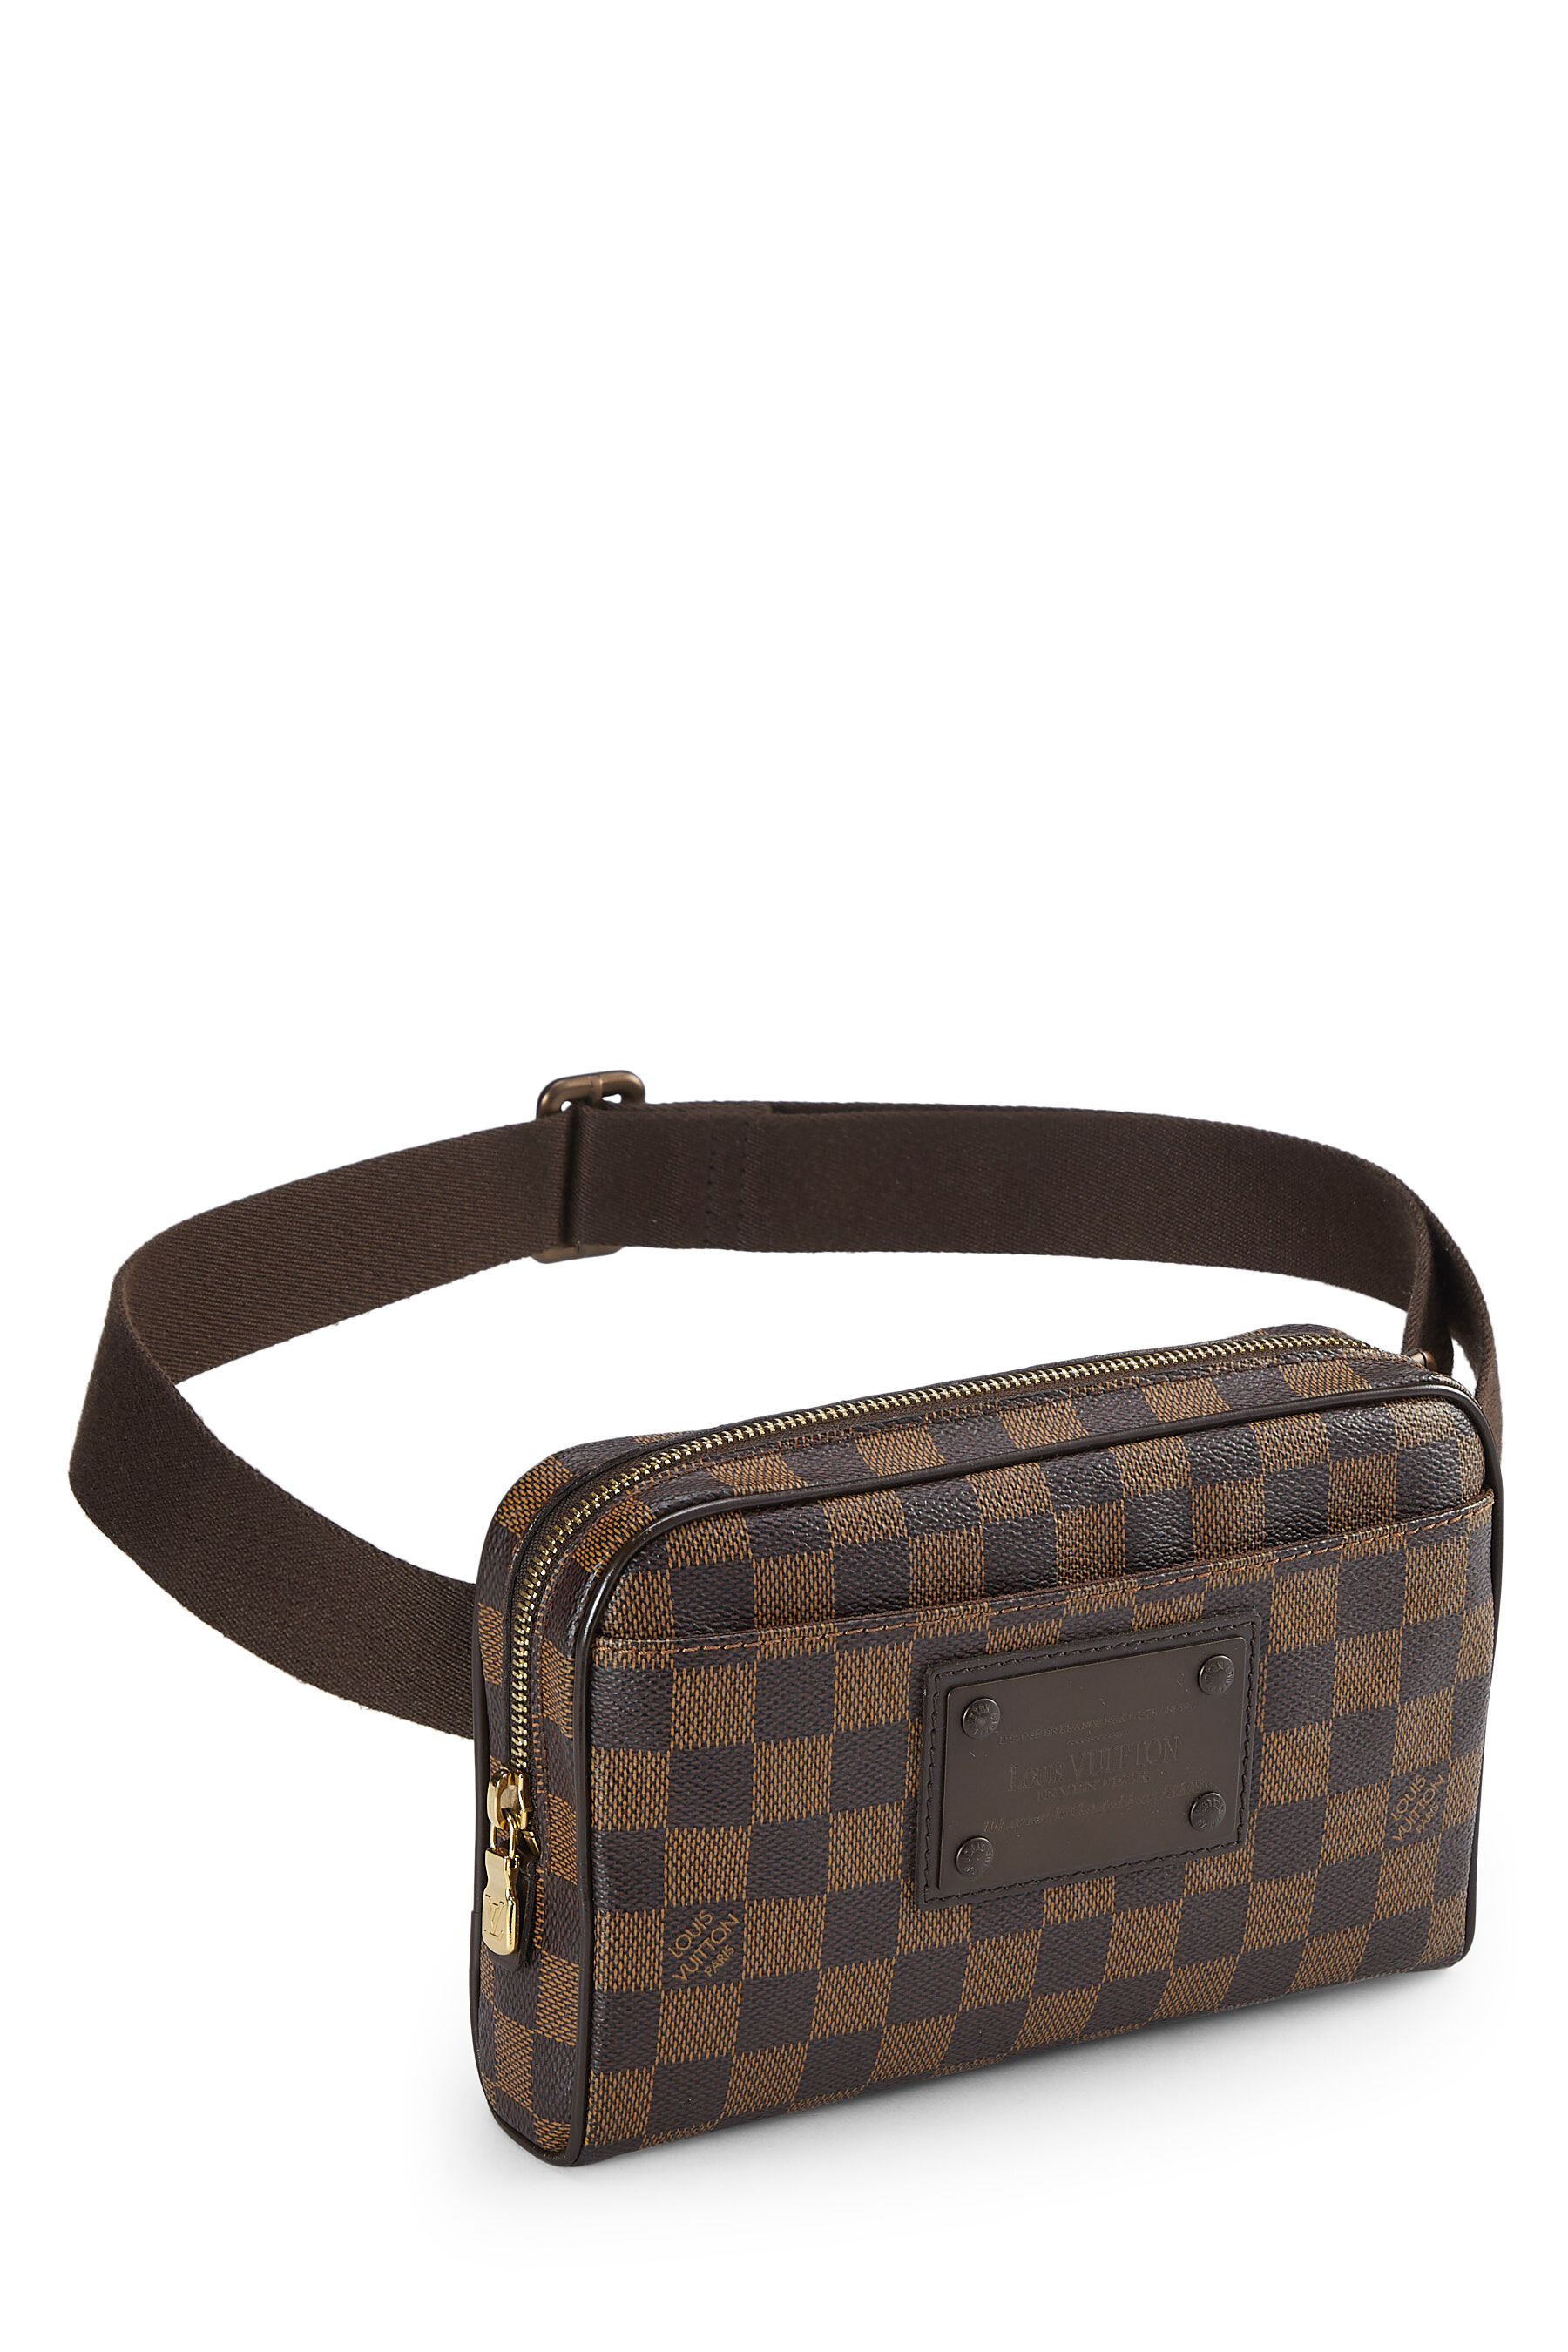 Louis Vuitton Damier Ebene Brooklyn Bum Bag - A World Of Goods For You, LLC